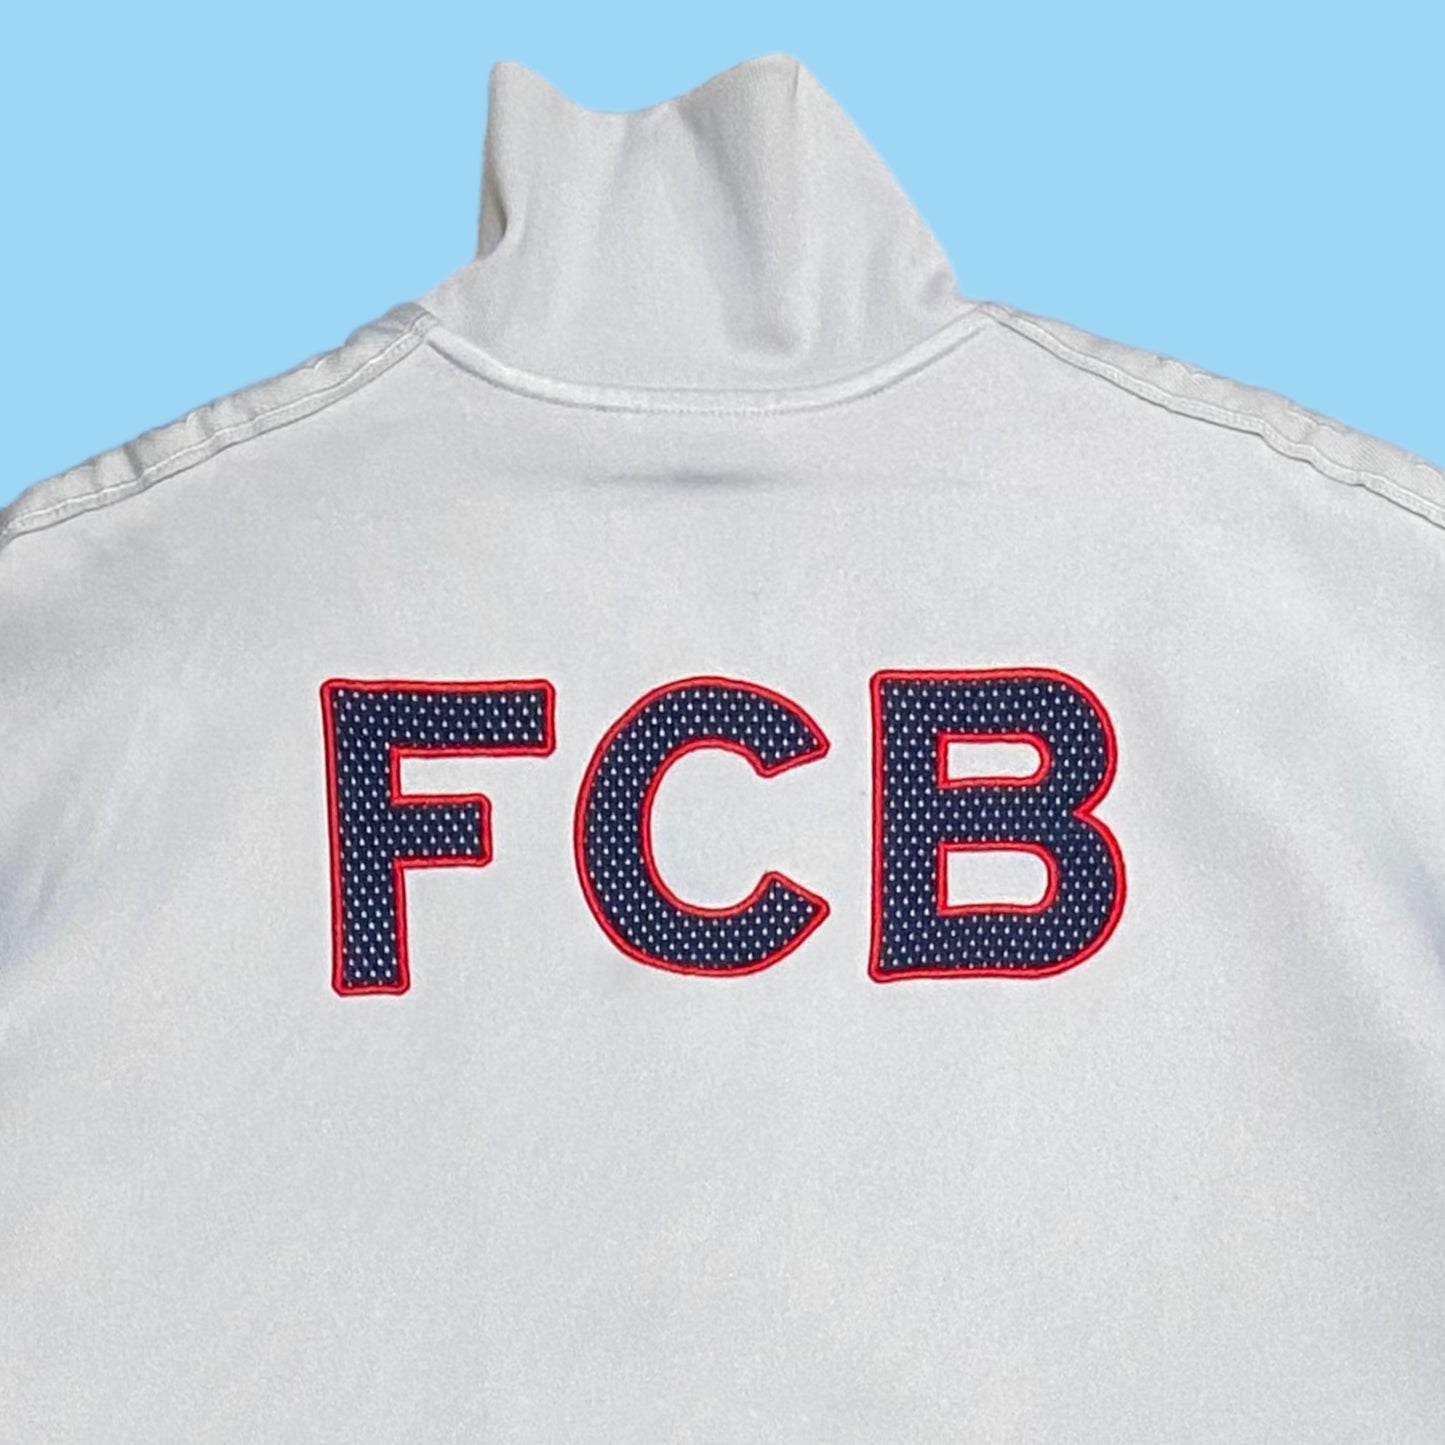 Vintage FC Barcelona track jacket - L